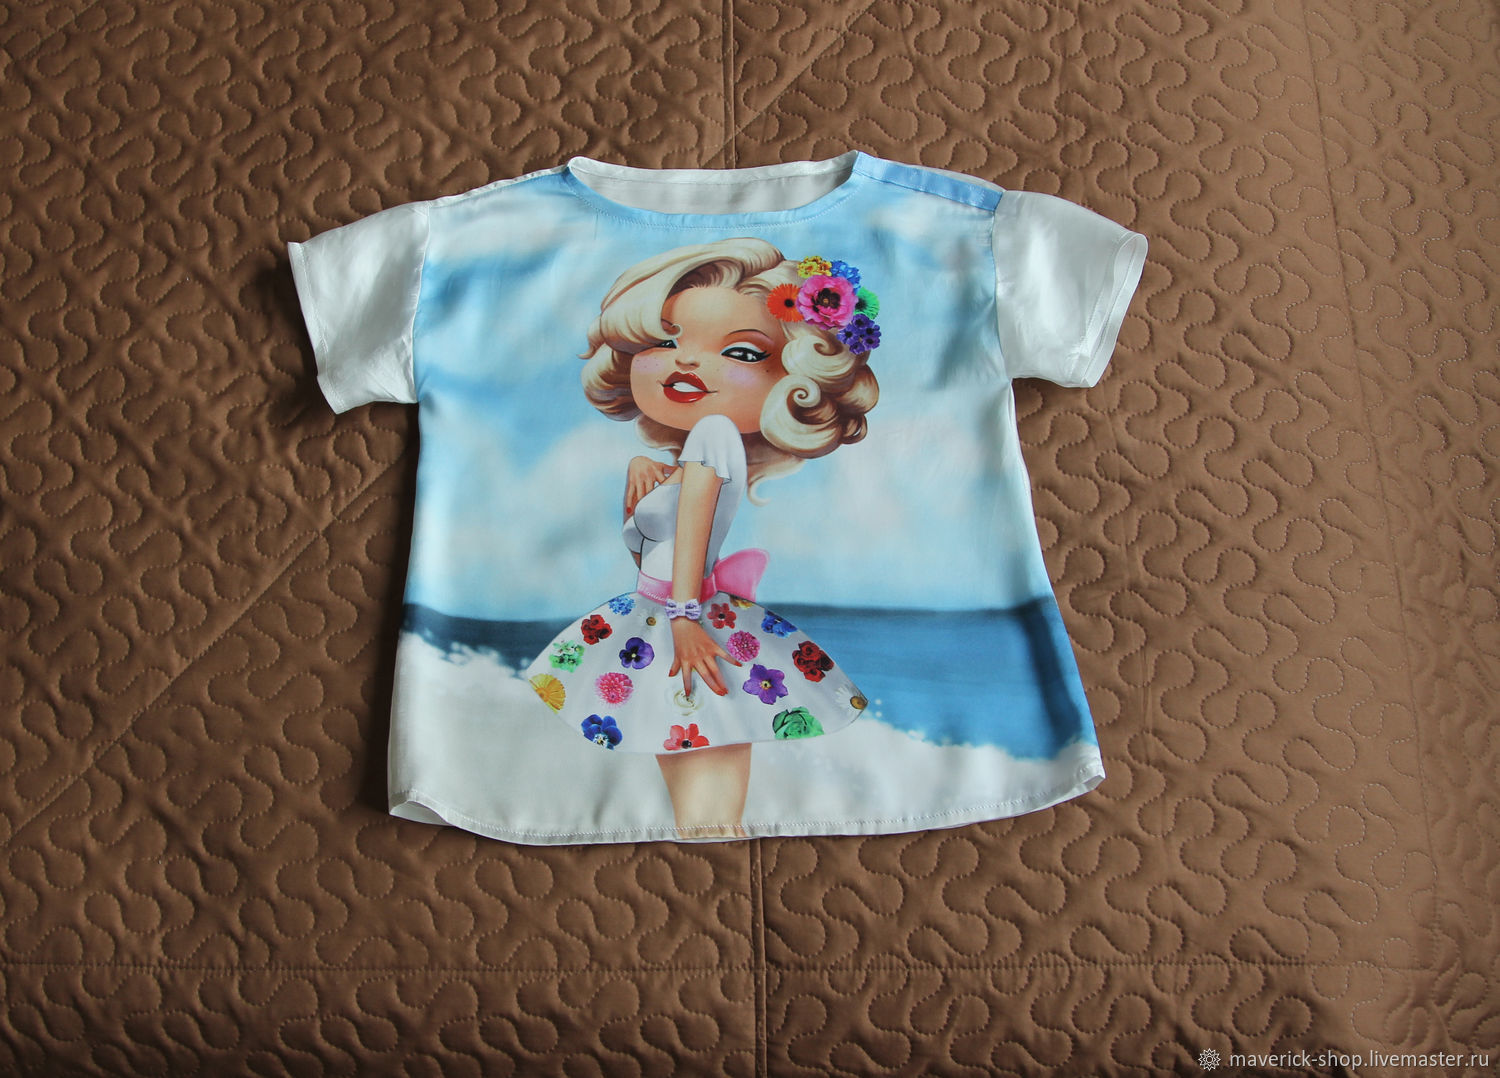 Monalisa Детская Одежда Интернет Магазин